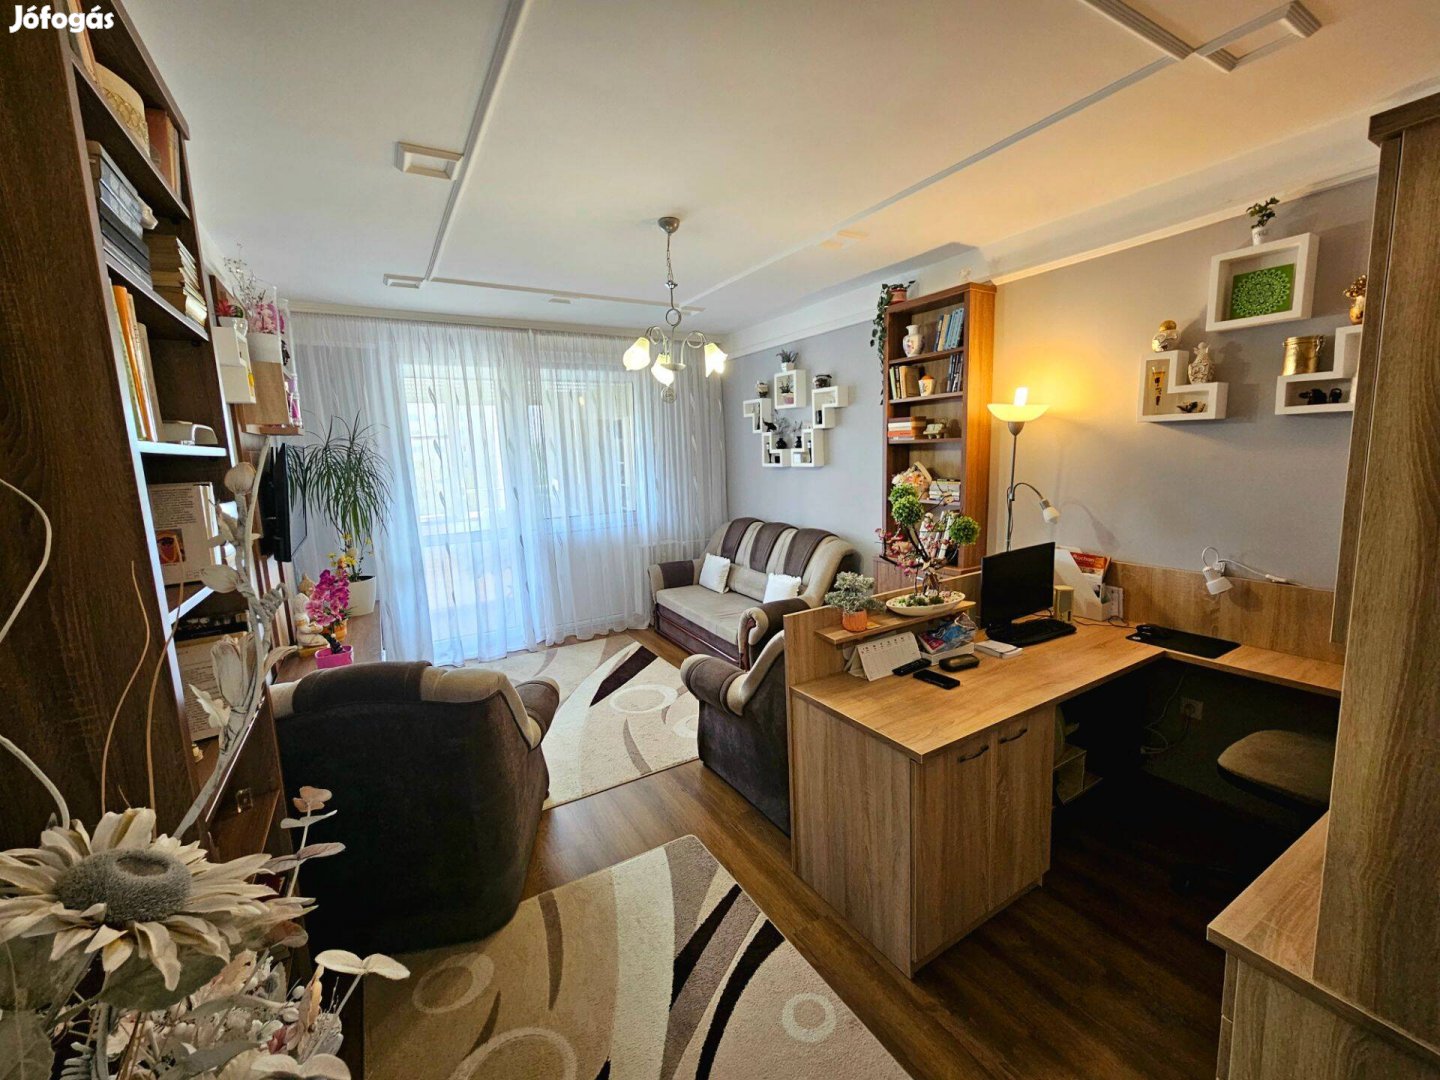 Eladó tulajdonostól Miskolc Avas, 2 szobás lakás